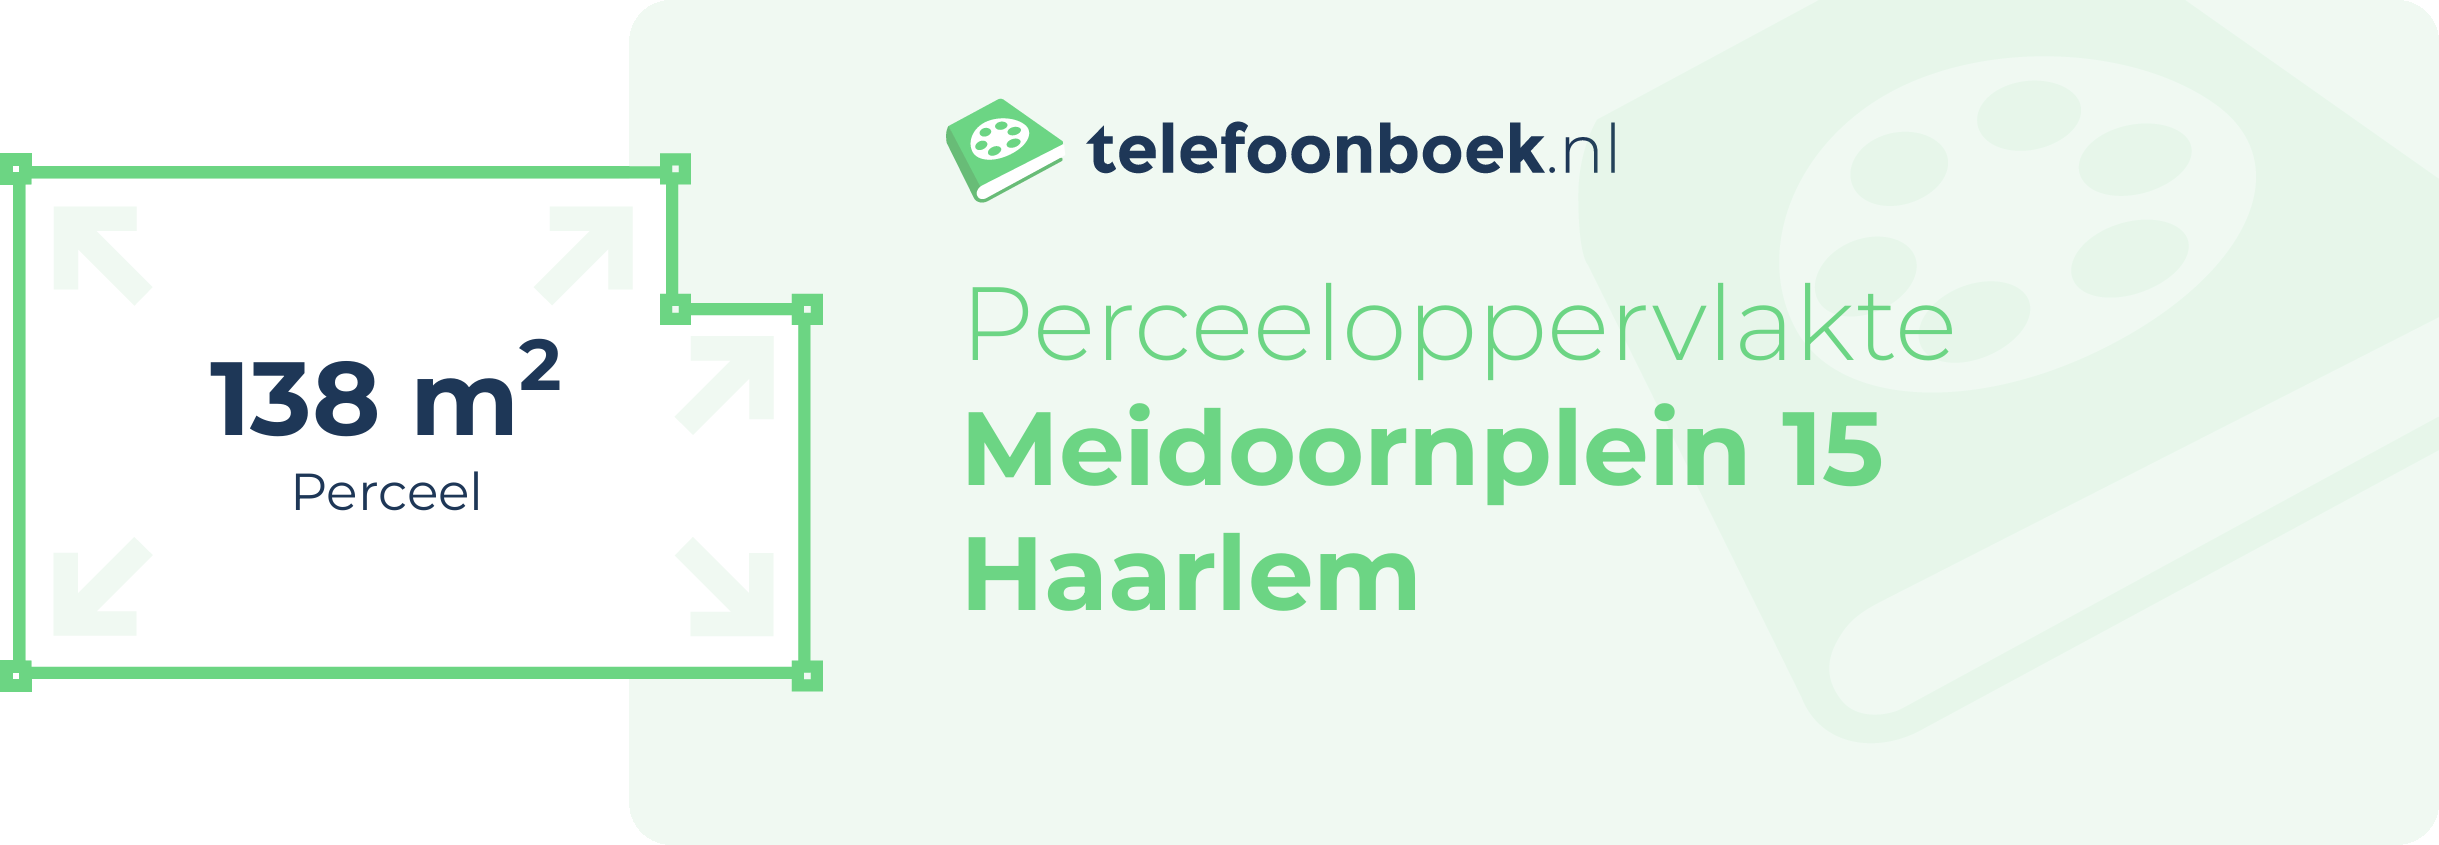 Perceeloppervlakte Meidoornplein 15 Haarlem